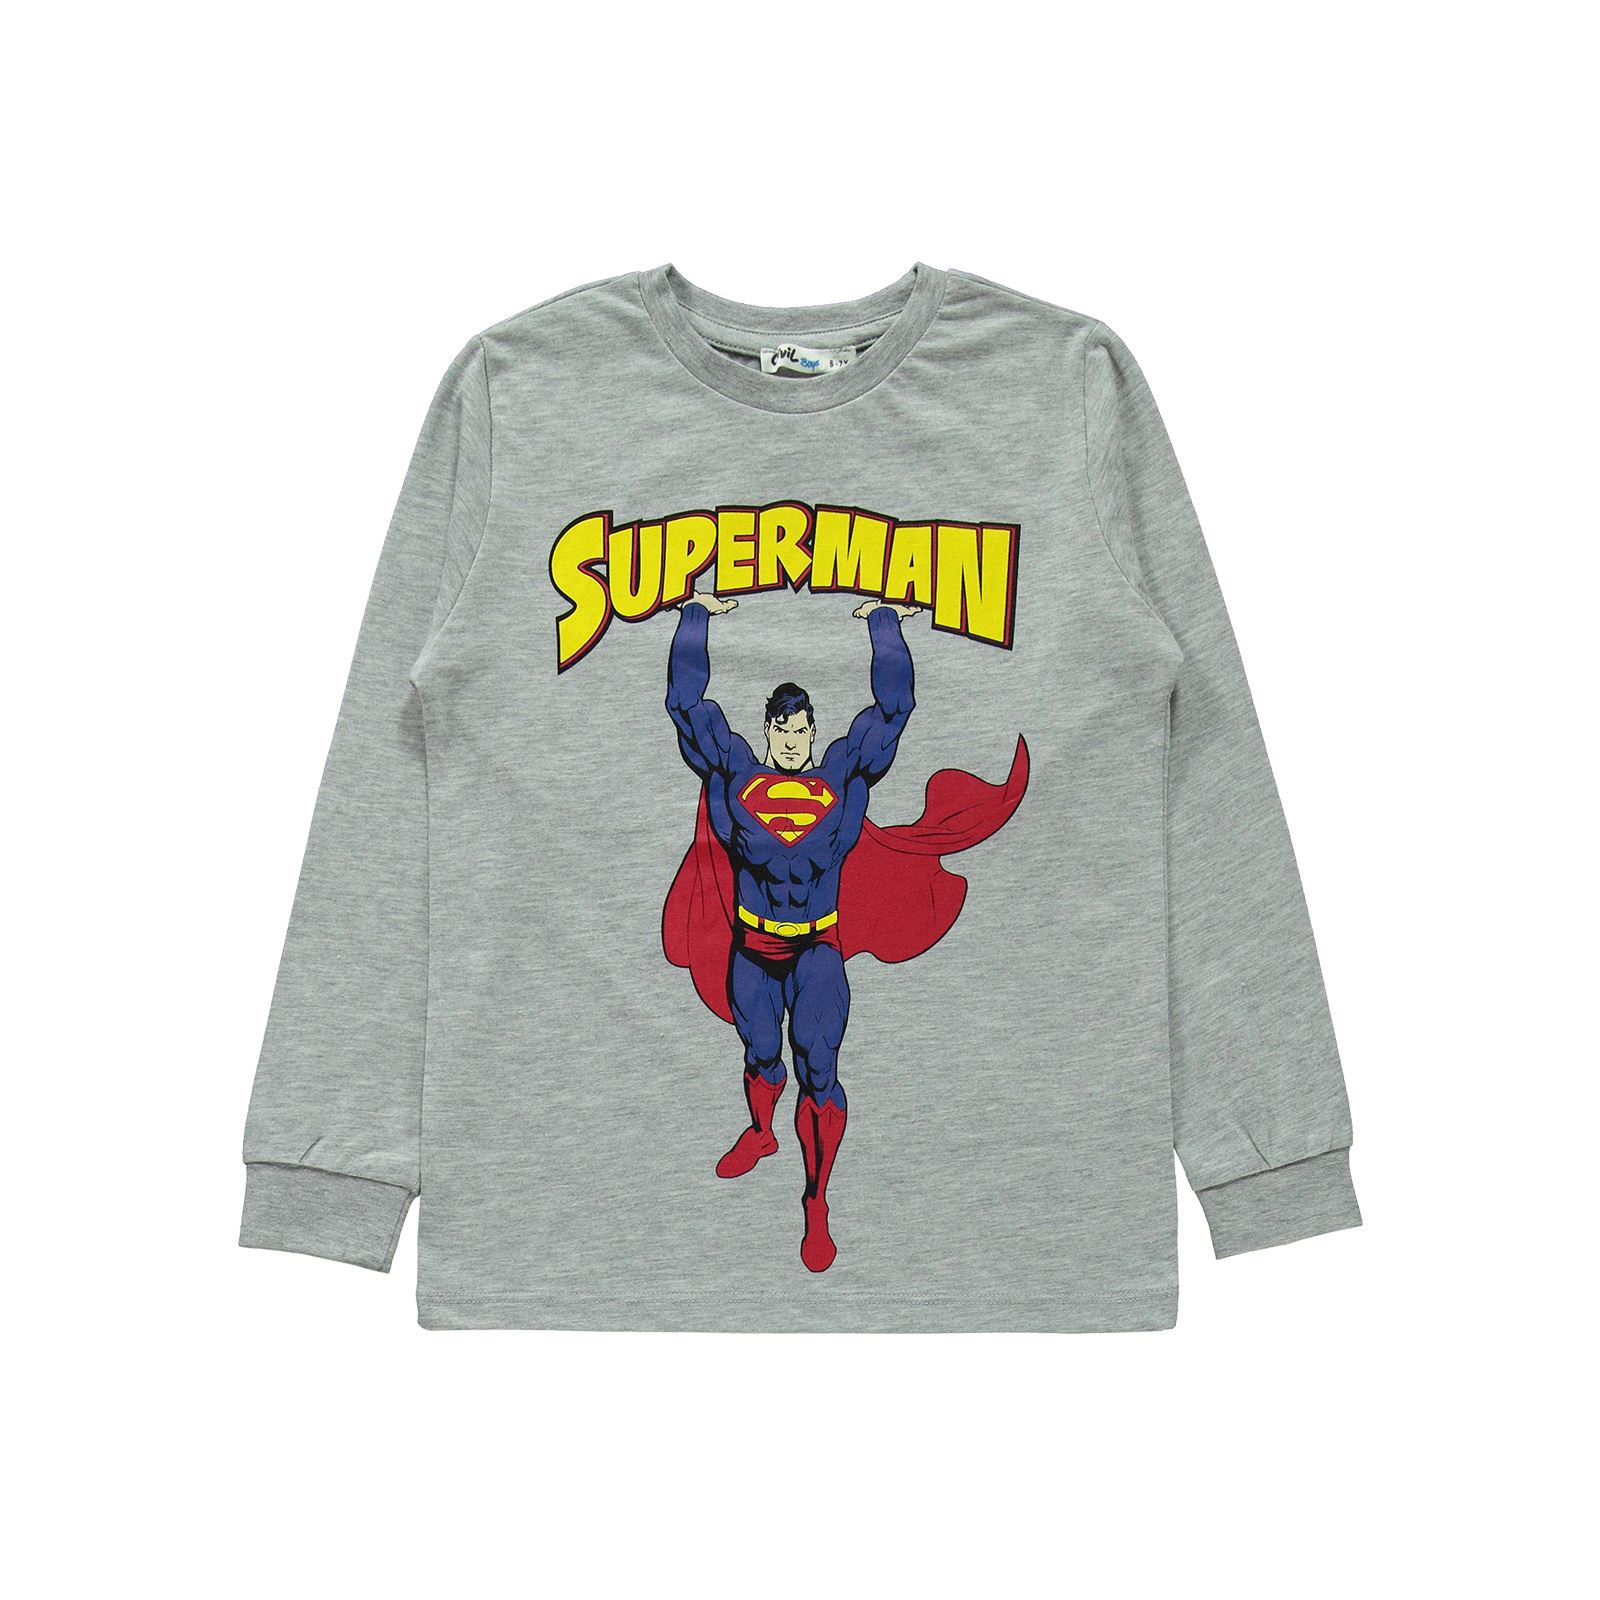 Süperman Erkek Çocuk Pijama Takımı 6-9 Yaş Grimelanj